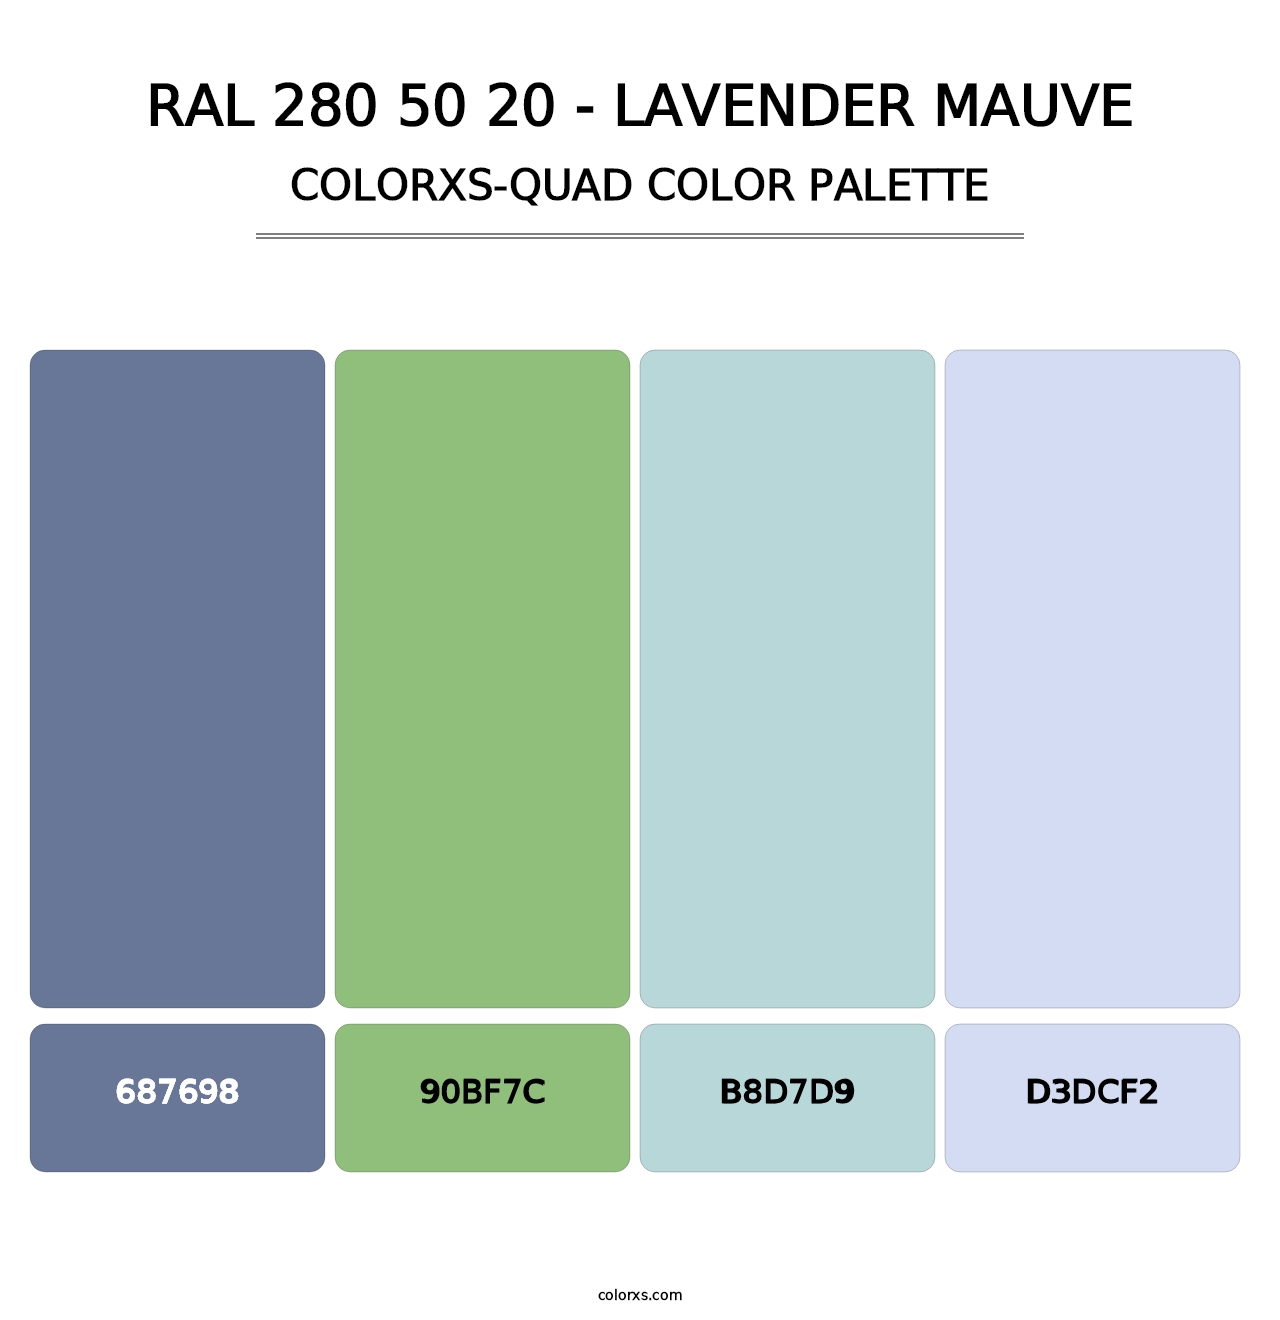 RAL 280 50 20 - Lavender Mauve - Colorxs Quad Palette